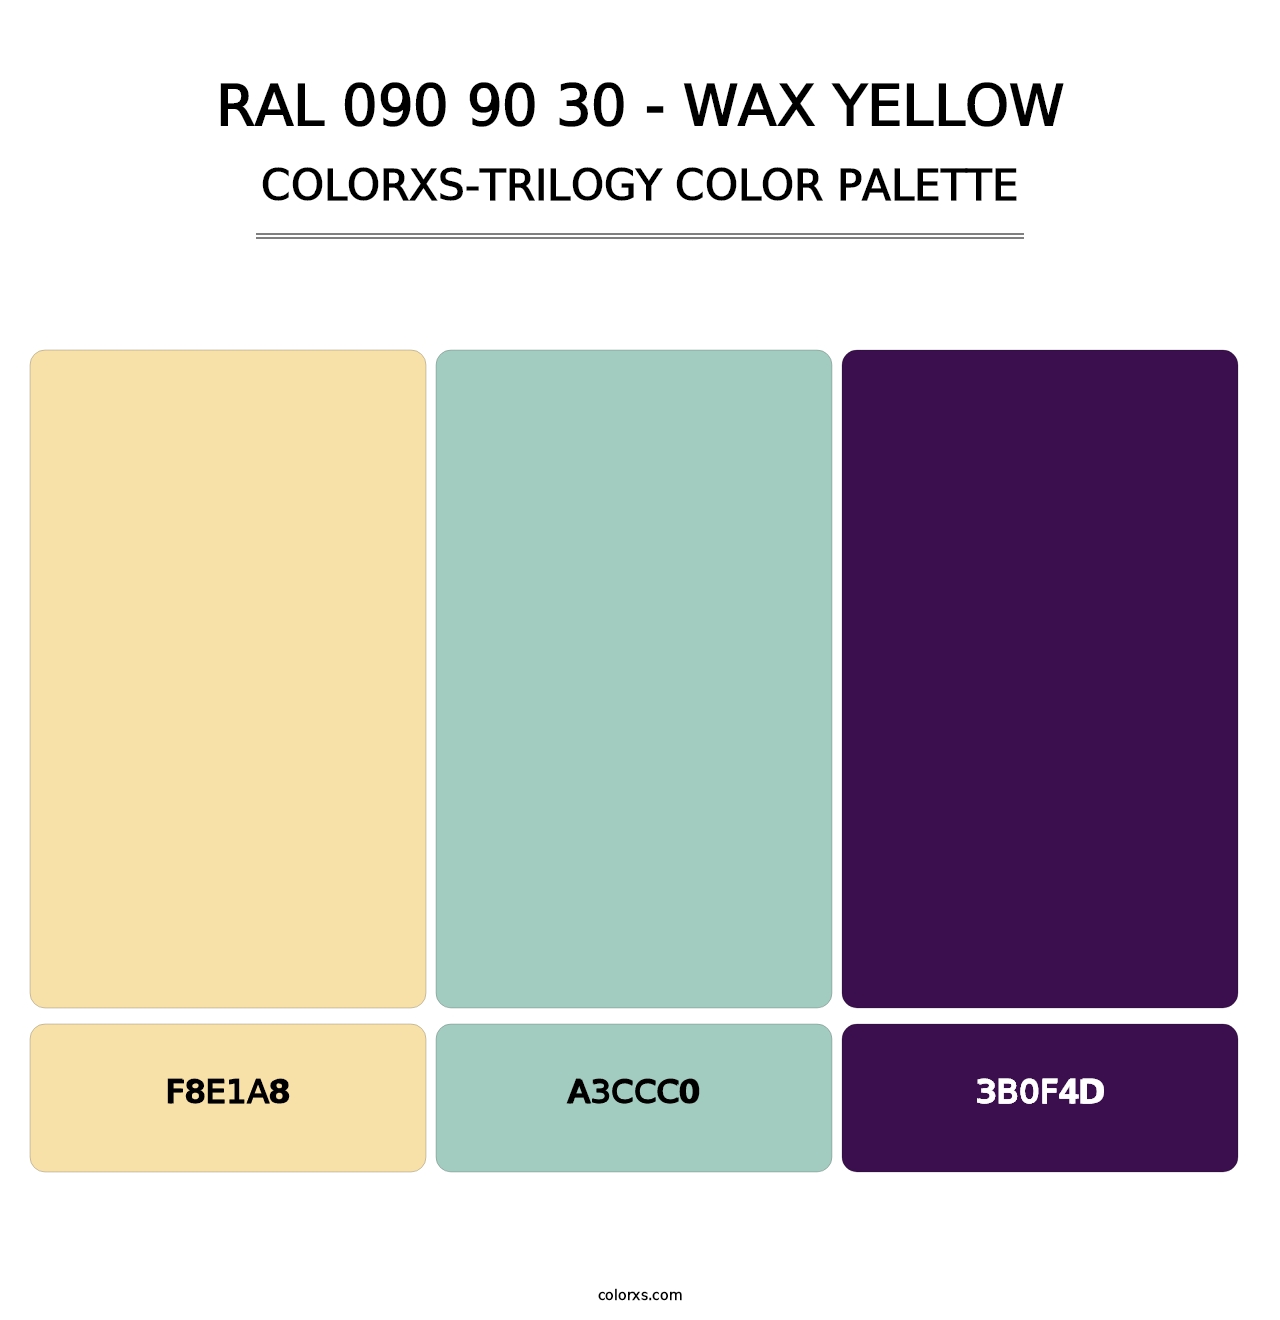 RAL 090 90 30 - Wax Yellow - Colorxs Trilogy Palette